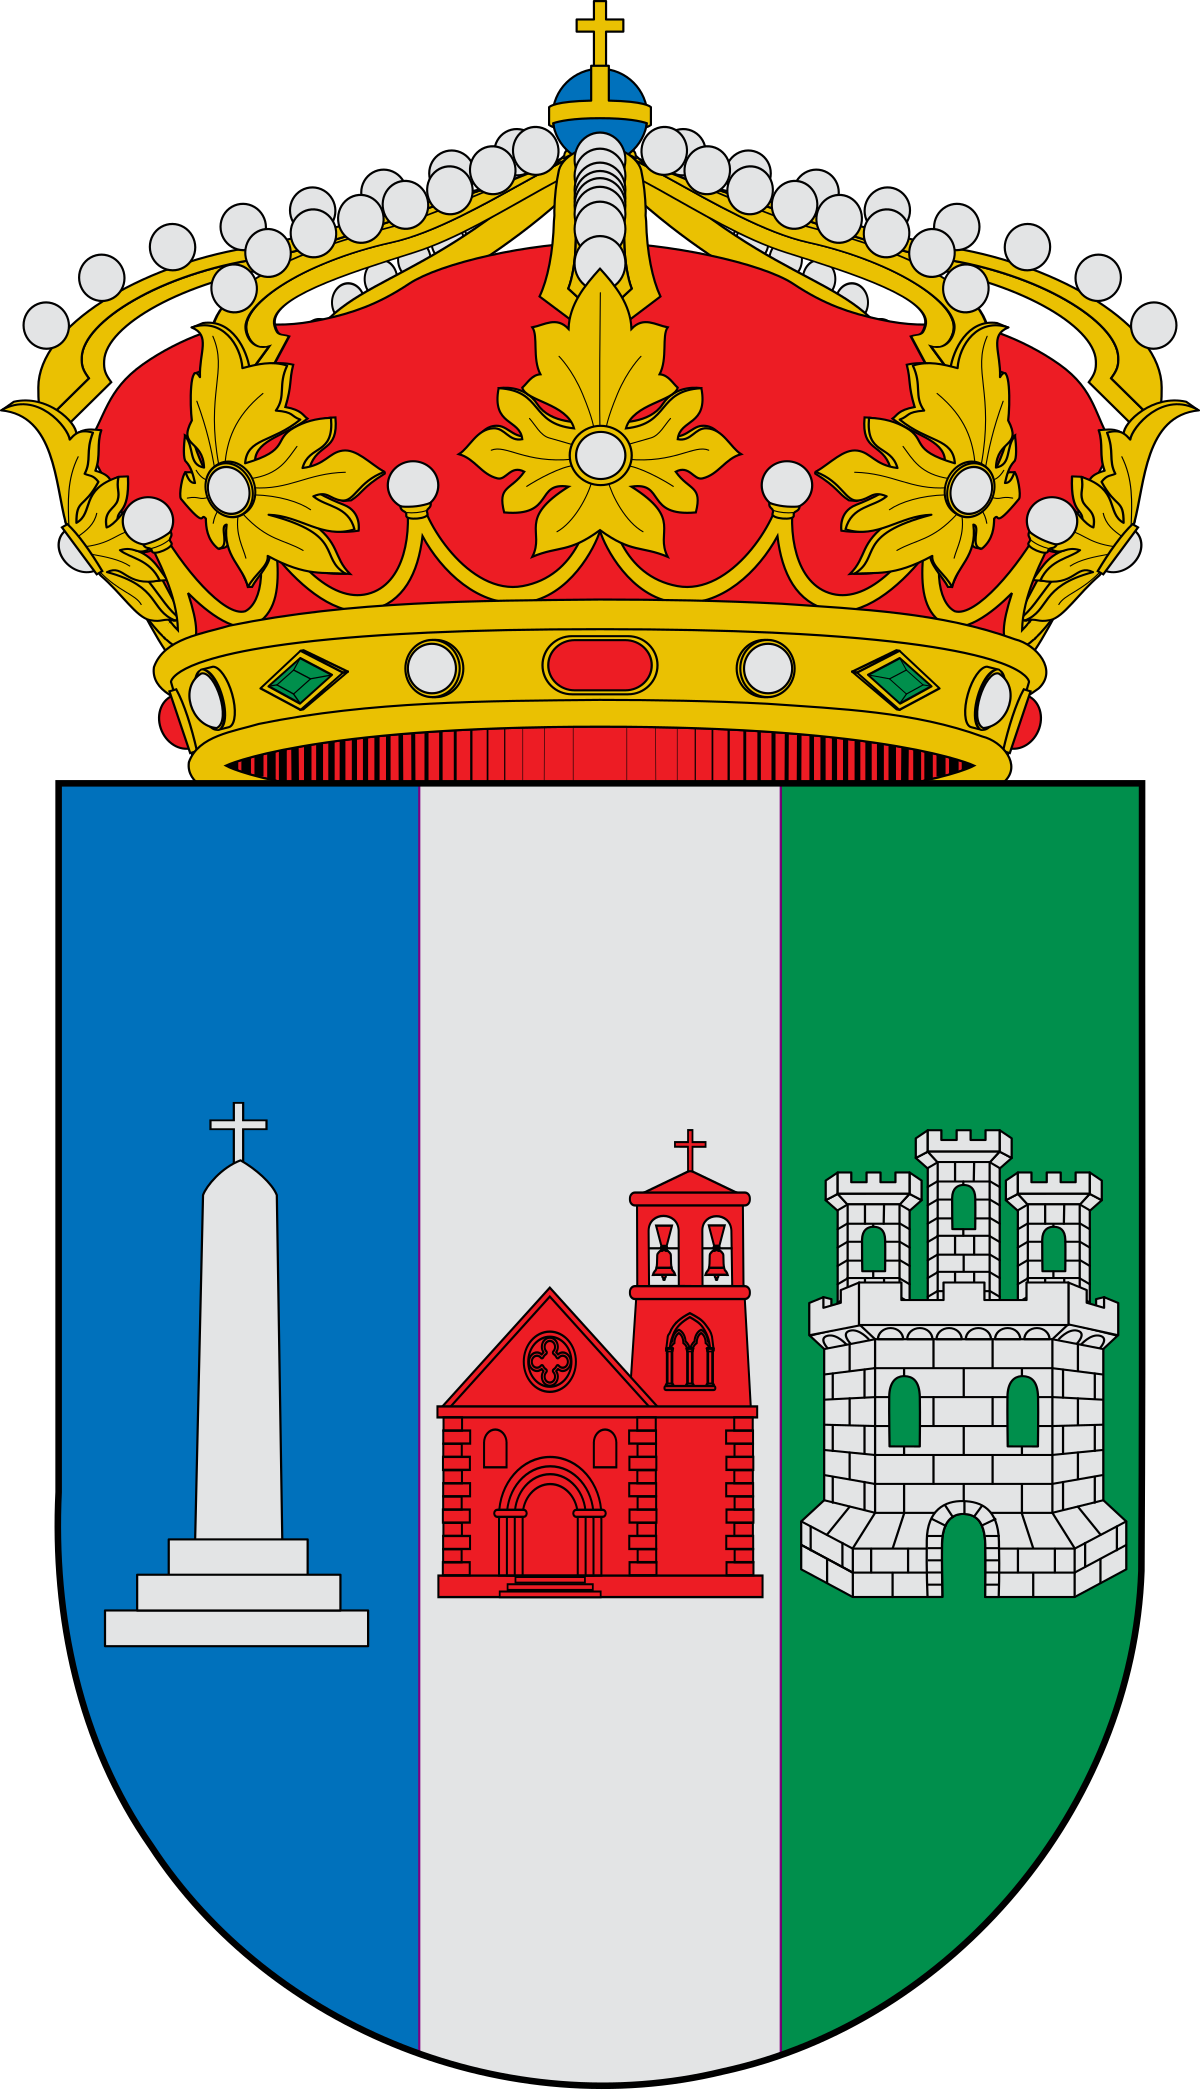 Escudo_de_Puebla_de_Don_Francisco_(El_Valle_de_Altomira).svg